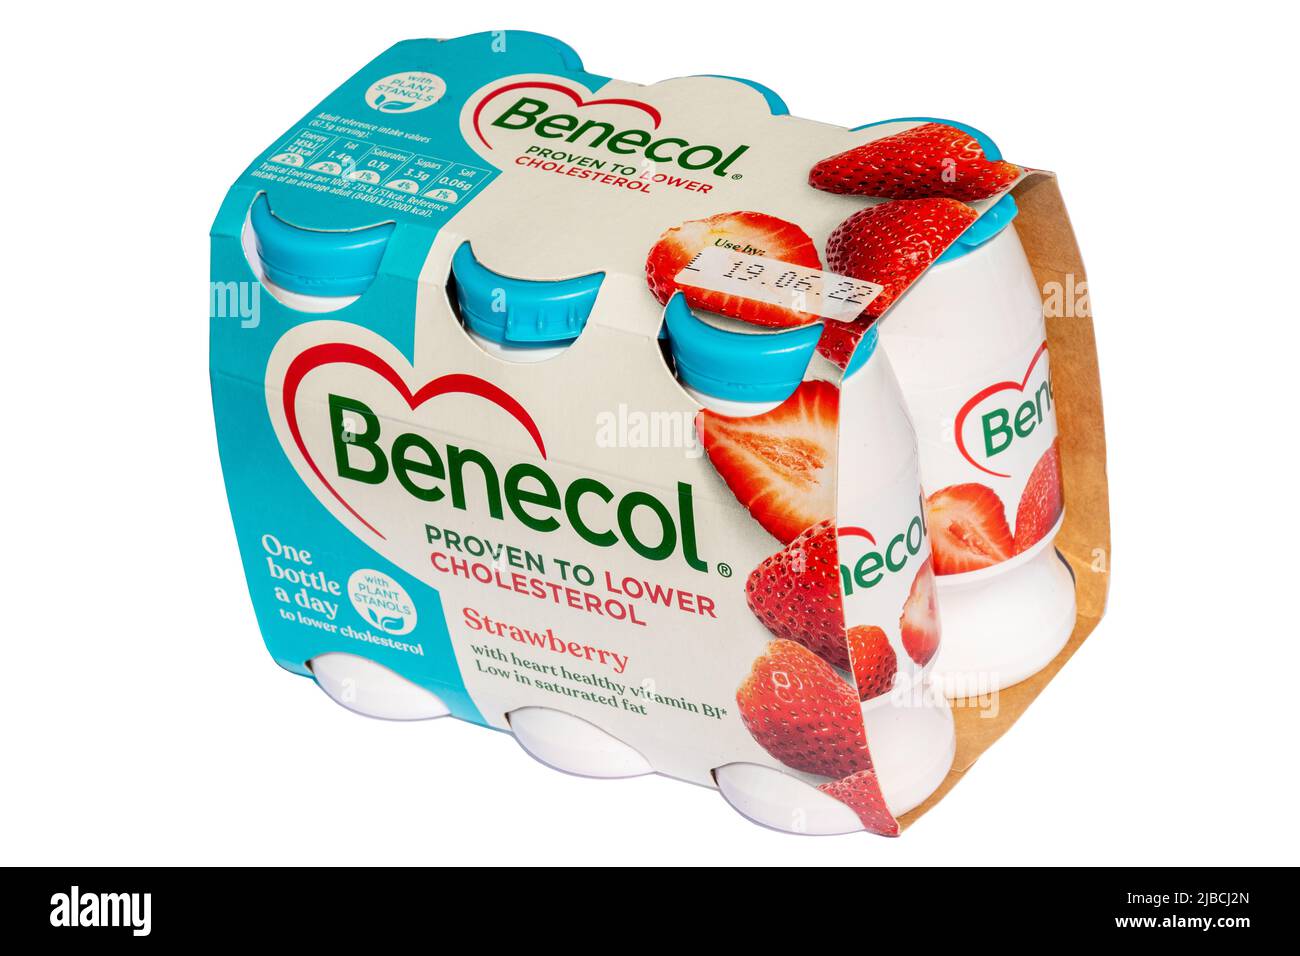 Benecol yogurt bevande fragola sapore, con piante stanoli dimostrato di abbassare il colesterolo, cuore sano prodotto alimentare, Regno Unito Foto Stock